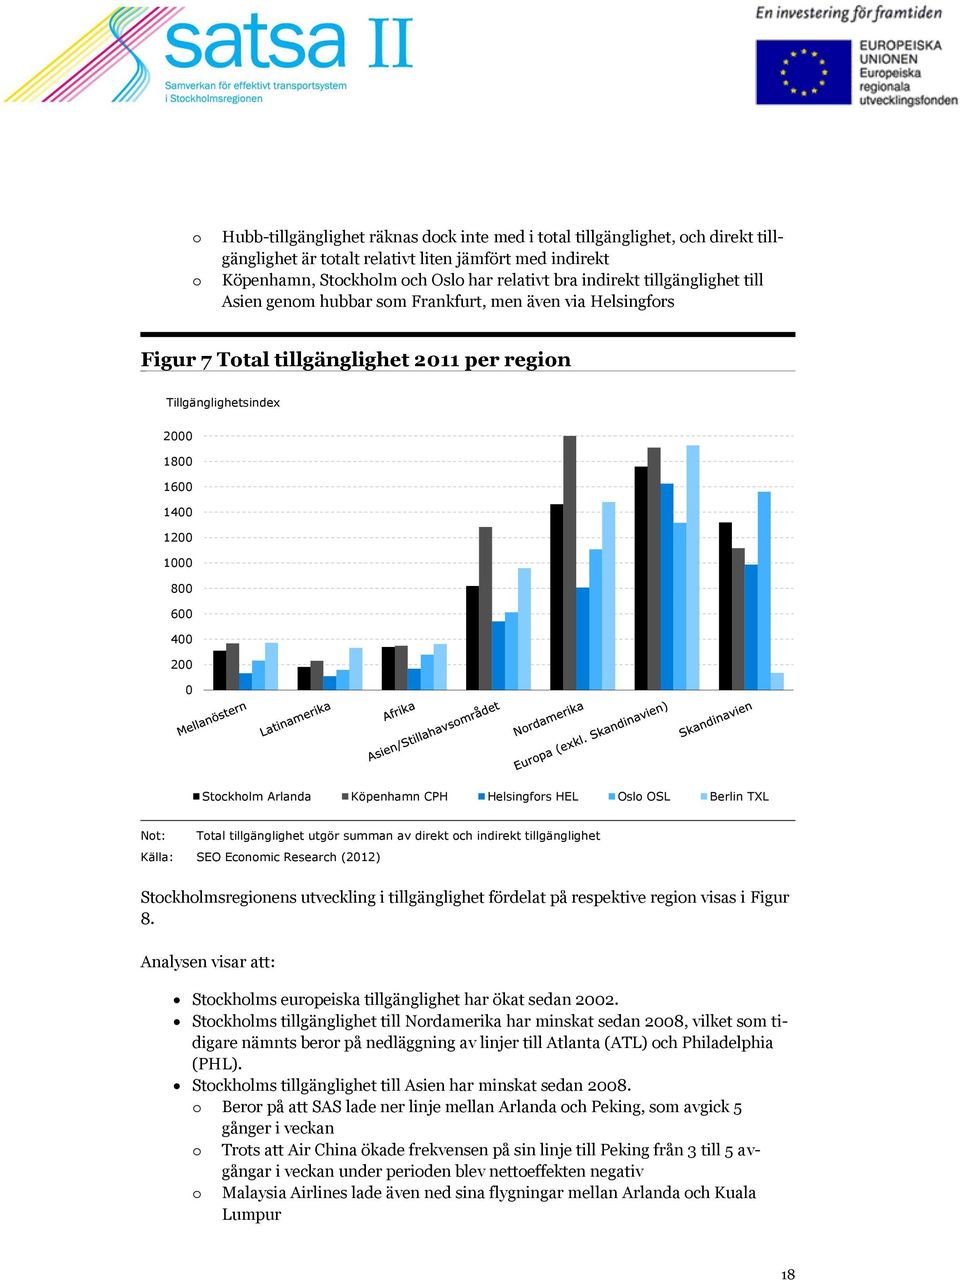 Stockholm Arlanda Köpenhamn CPH Helsingfors HEL Oslo OSL Berlin TXL Not: Total tillgänglighet utgör summan av direkt och indirekt tillgänglighet Källa: SEO Economic Research (2012)